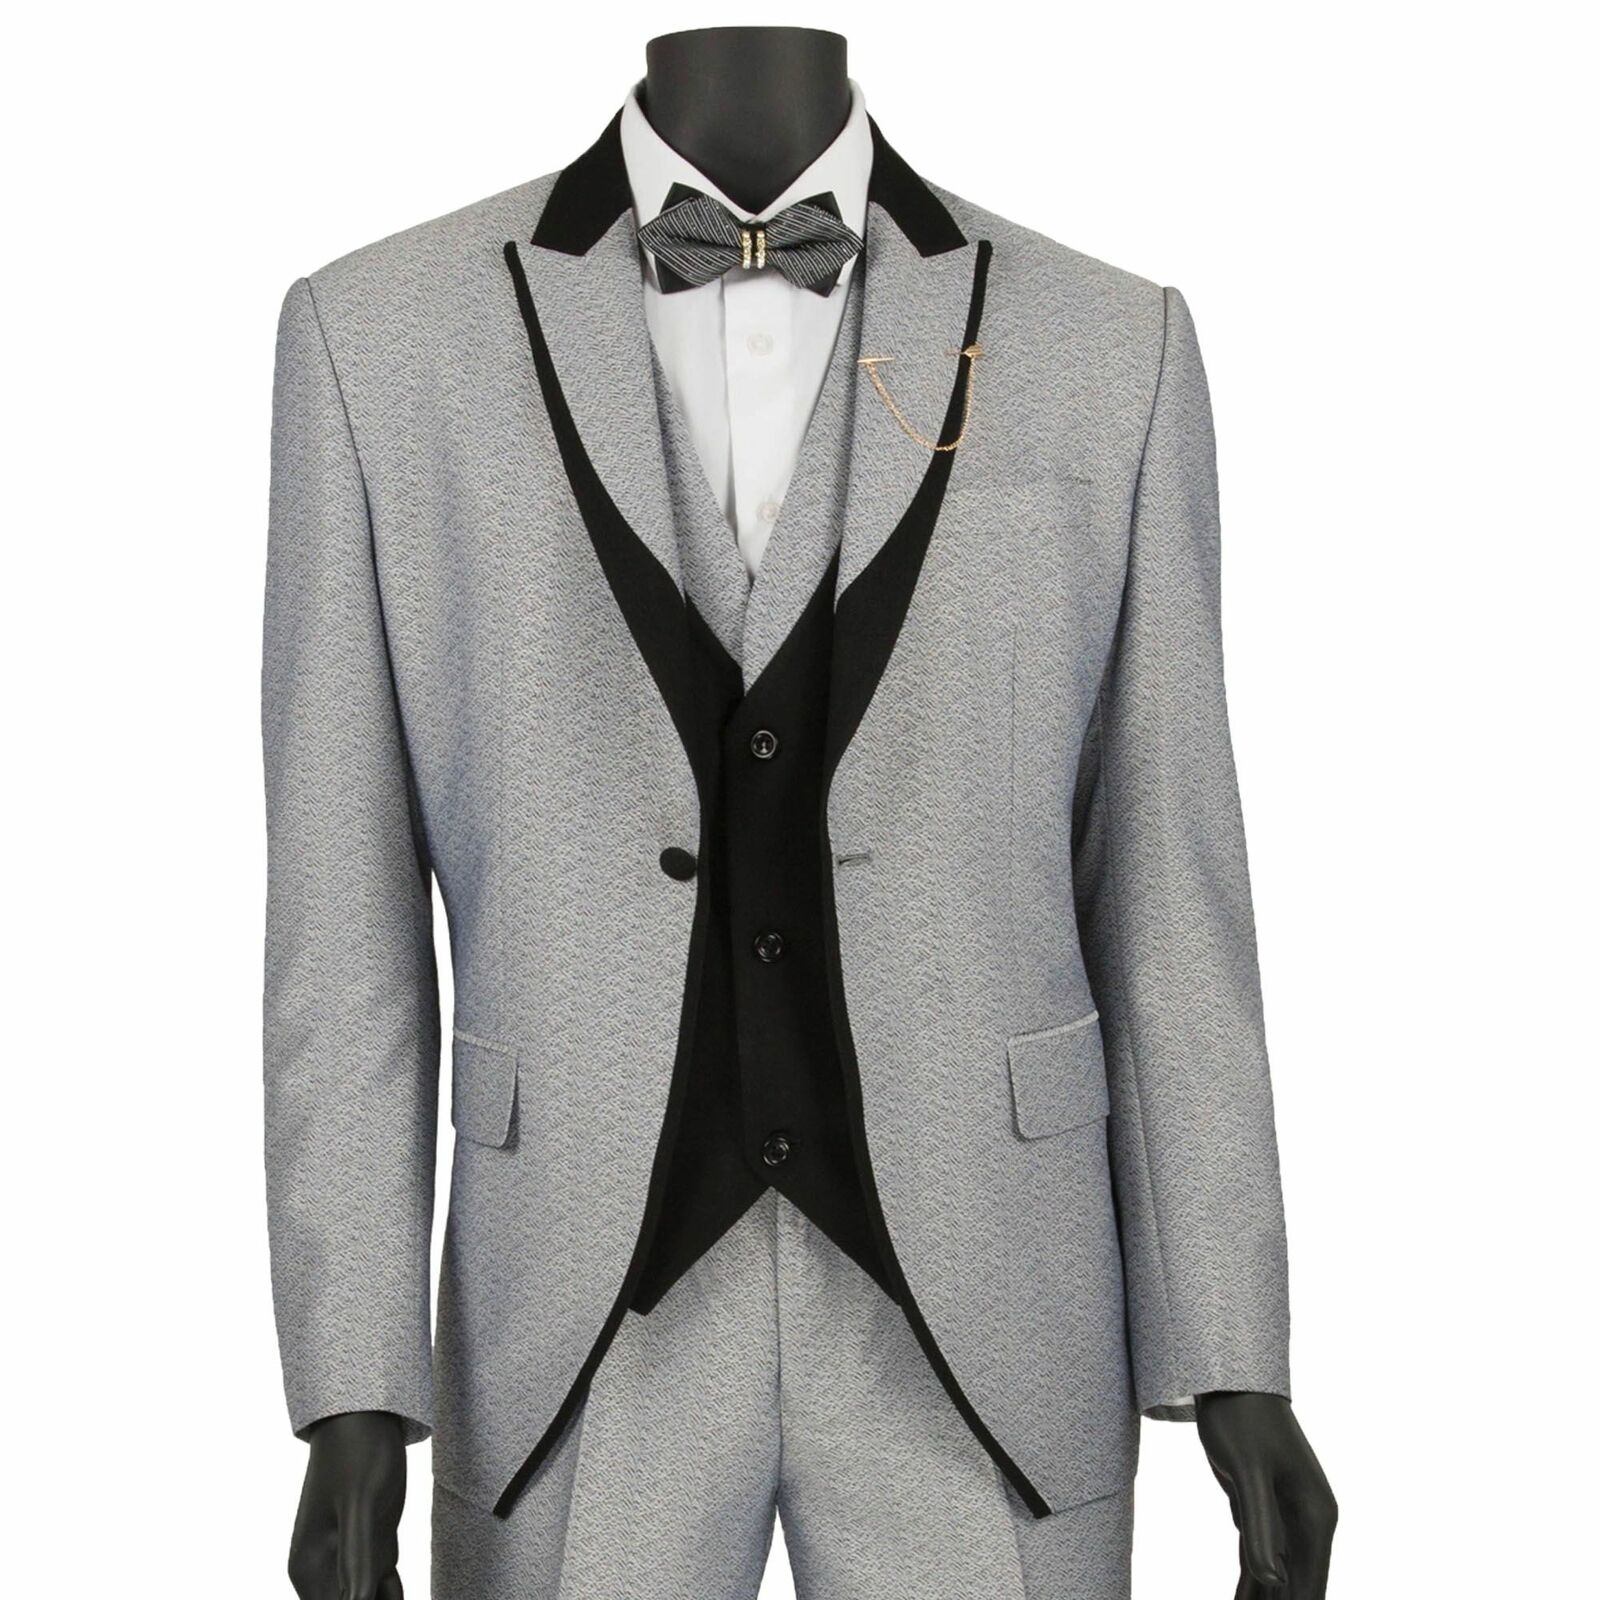 VINCI Men's Silver Textured Limited Special Price 3pc Tuxedo Japan's largest assortment Black Tri w & Suit Lapel